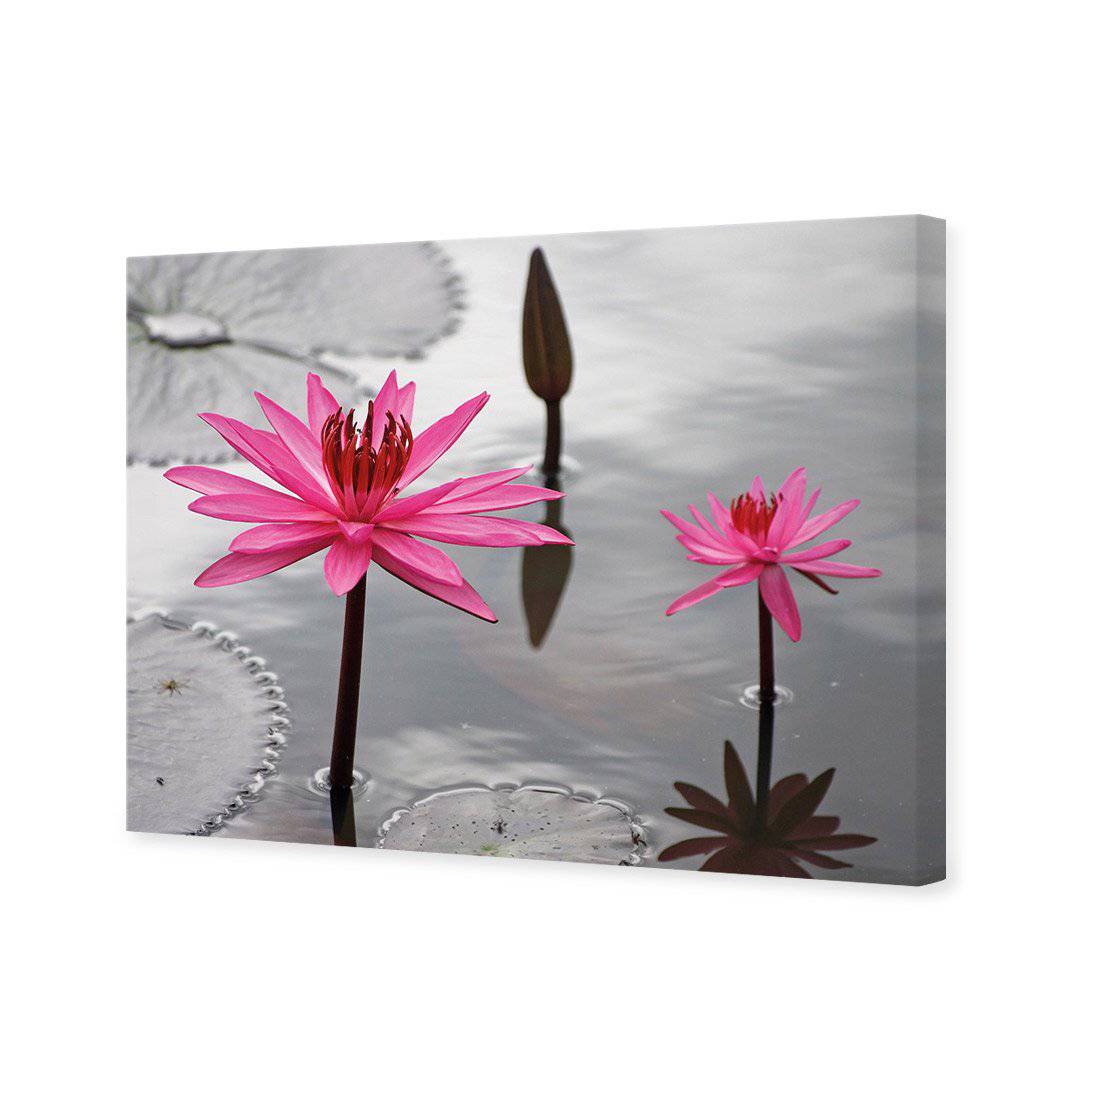 Pop Pink Lilies Canvas Art-Canvas-Wall Art Designs-45x30cm-Canvas - No Frame-Wall Art Designs